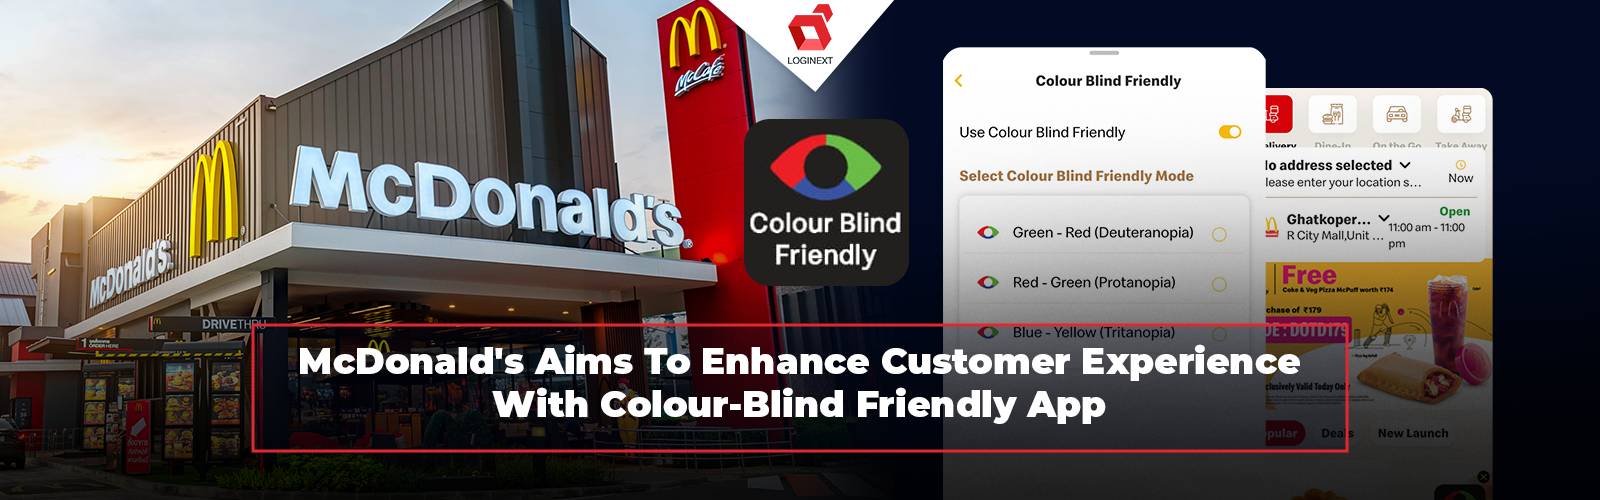 Η McDonald's βελτιώνει την εμπειρία των πελατών μέσω της εφαρμογής φιλική προς τα τυφλά